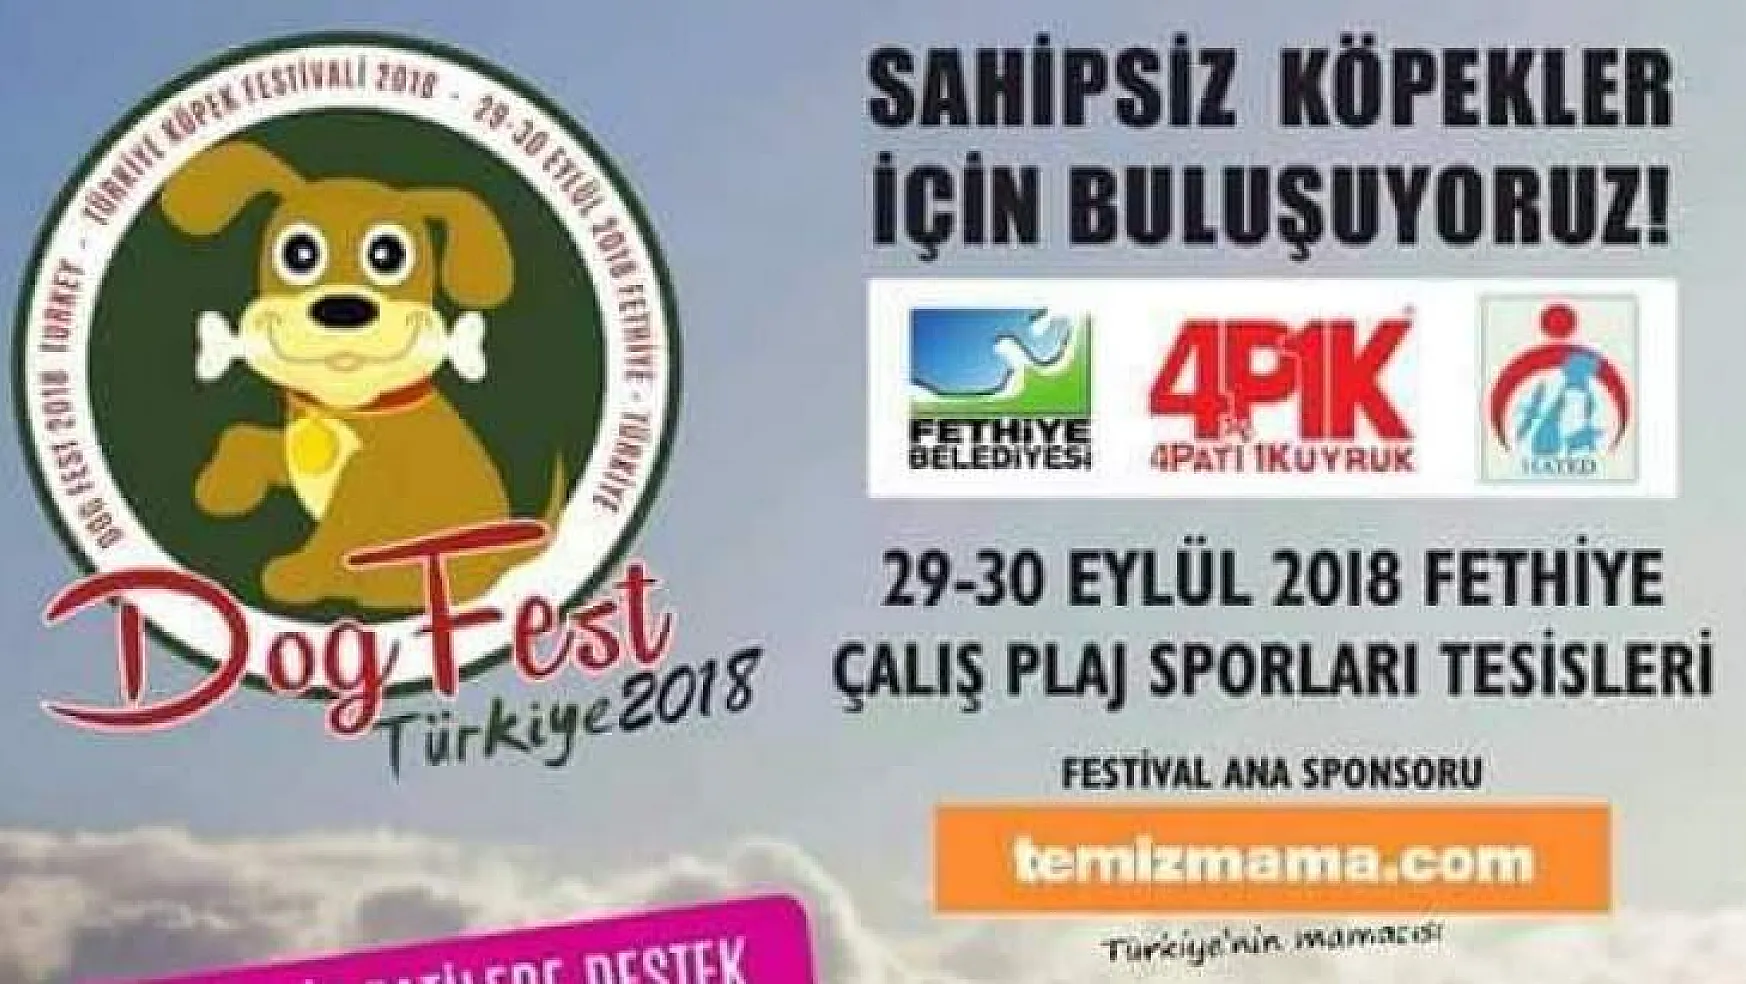 'Dogfest Türkiye 2018'  Fethiye'de Yapılacak